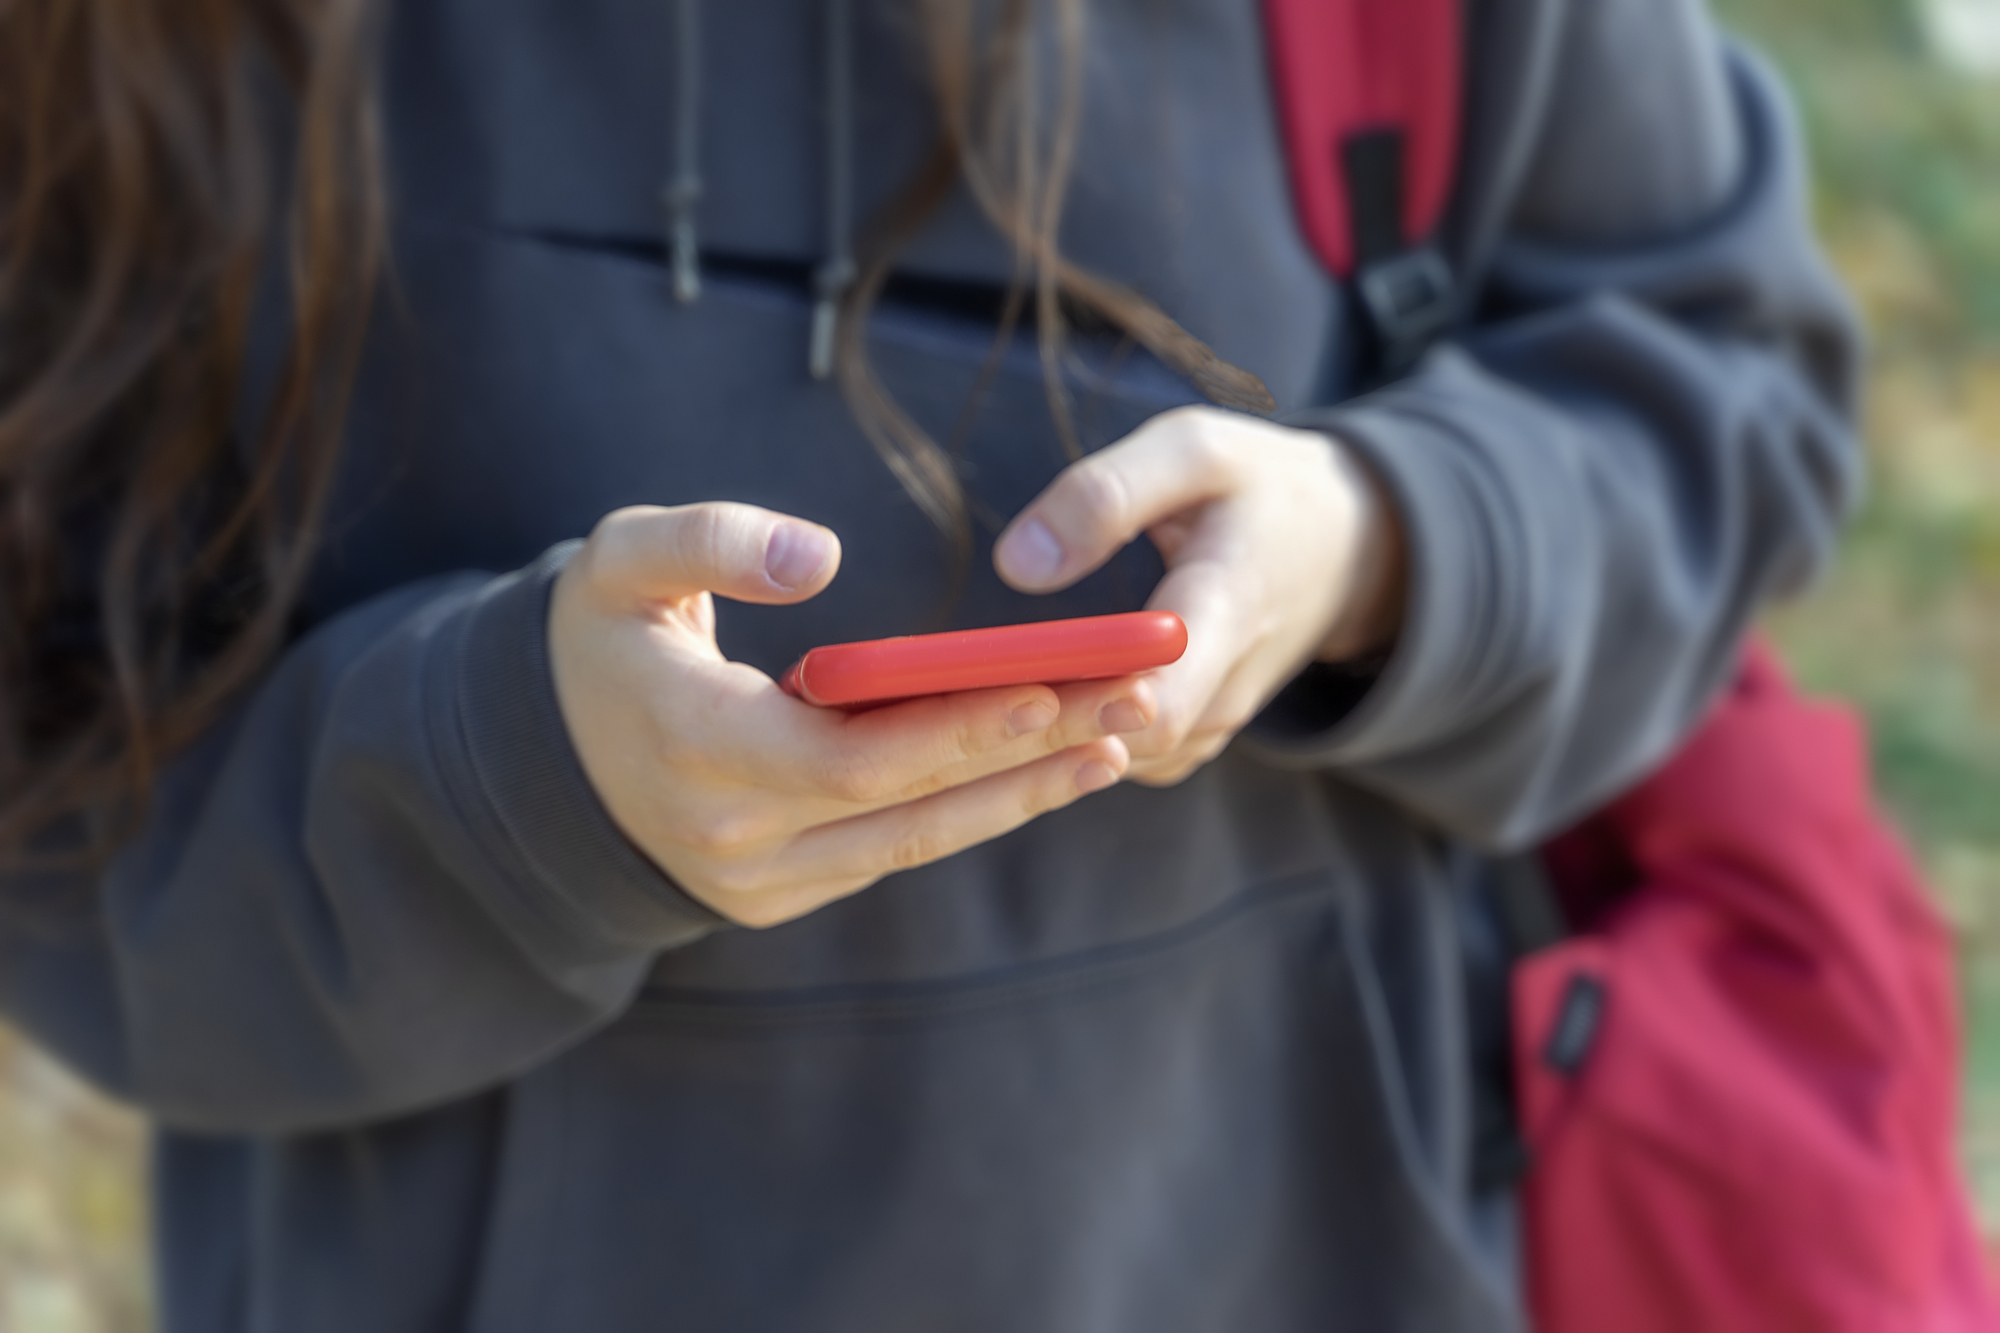 immagine ravvicinata busto di ragazza con mani che tendono smartphone rosso in primo piano